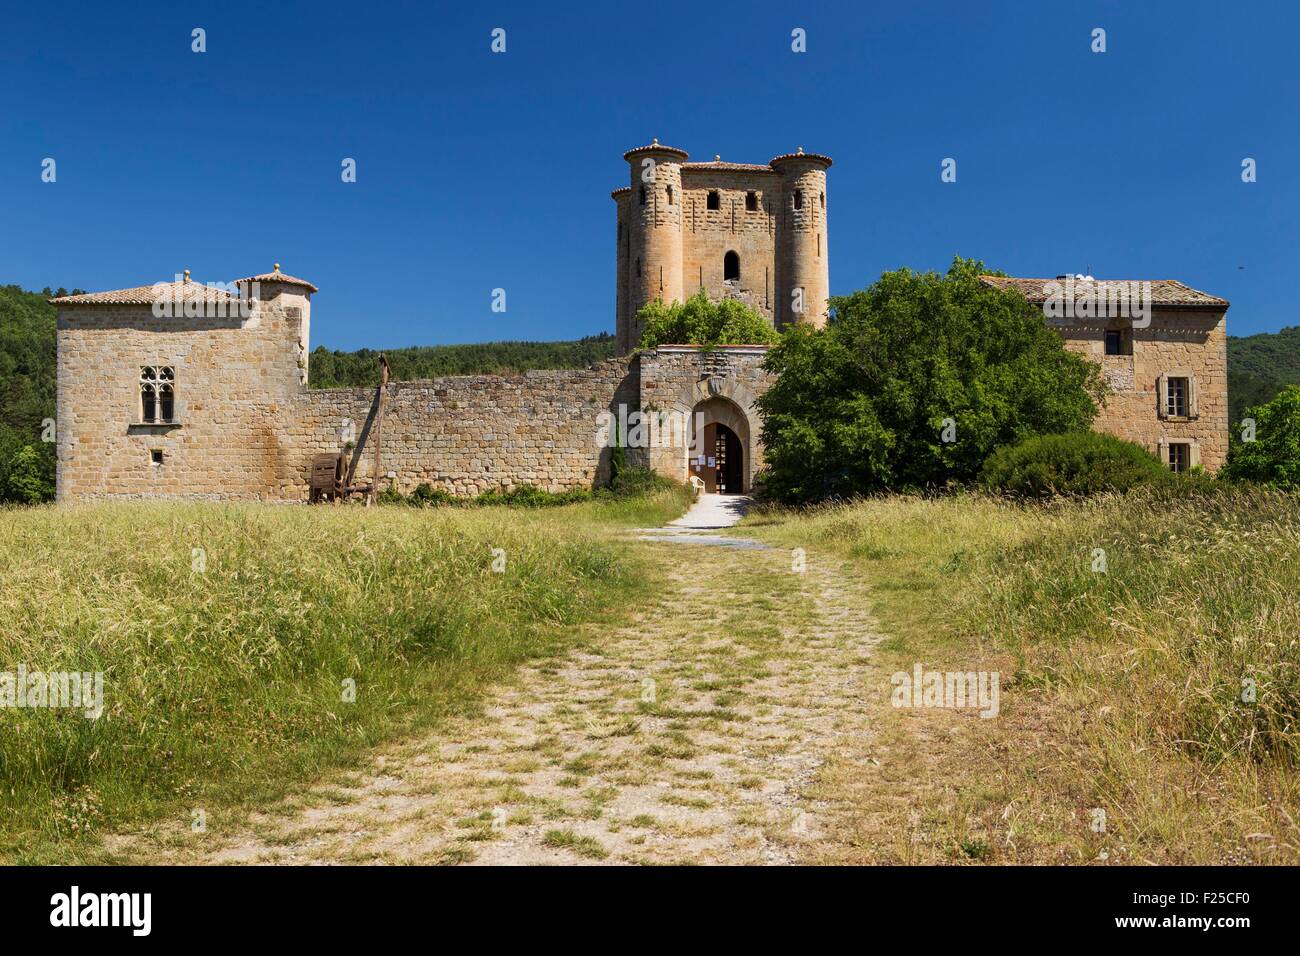 Frankreich, Aude, Arques, Schloss d'Arques, Katharer Schloss aus dem 13. und 14. Jahrhundert Stockfoto